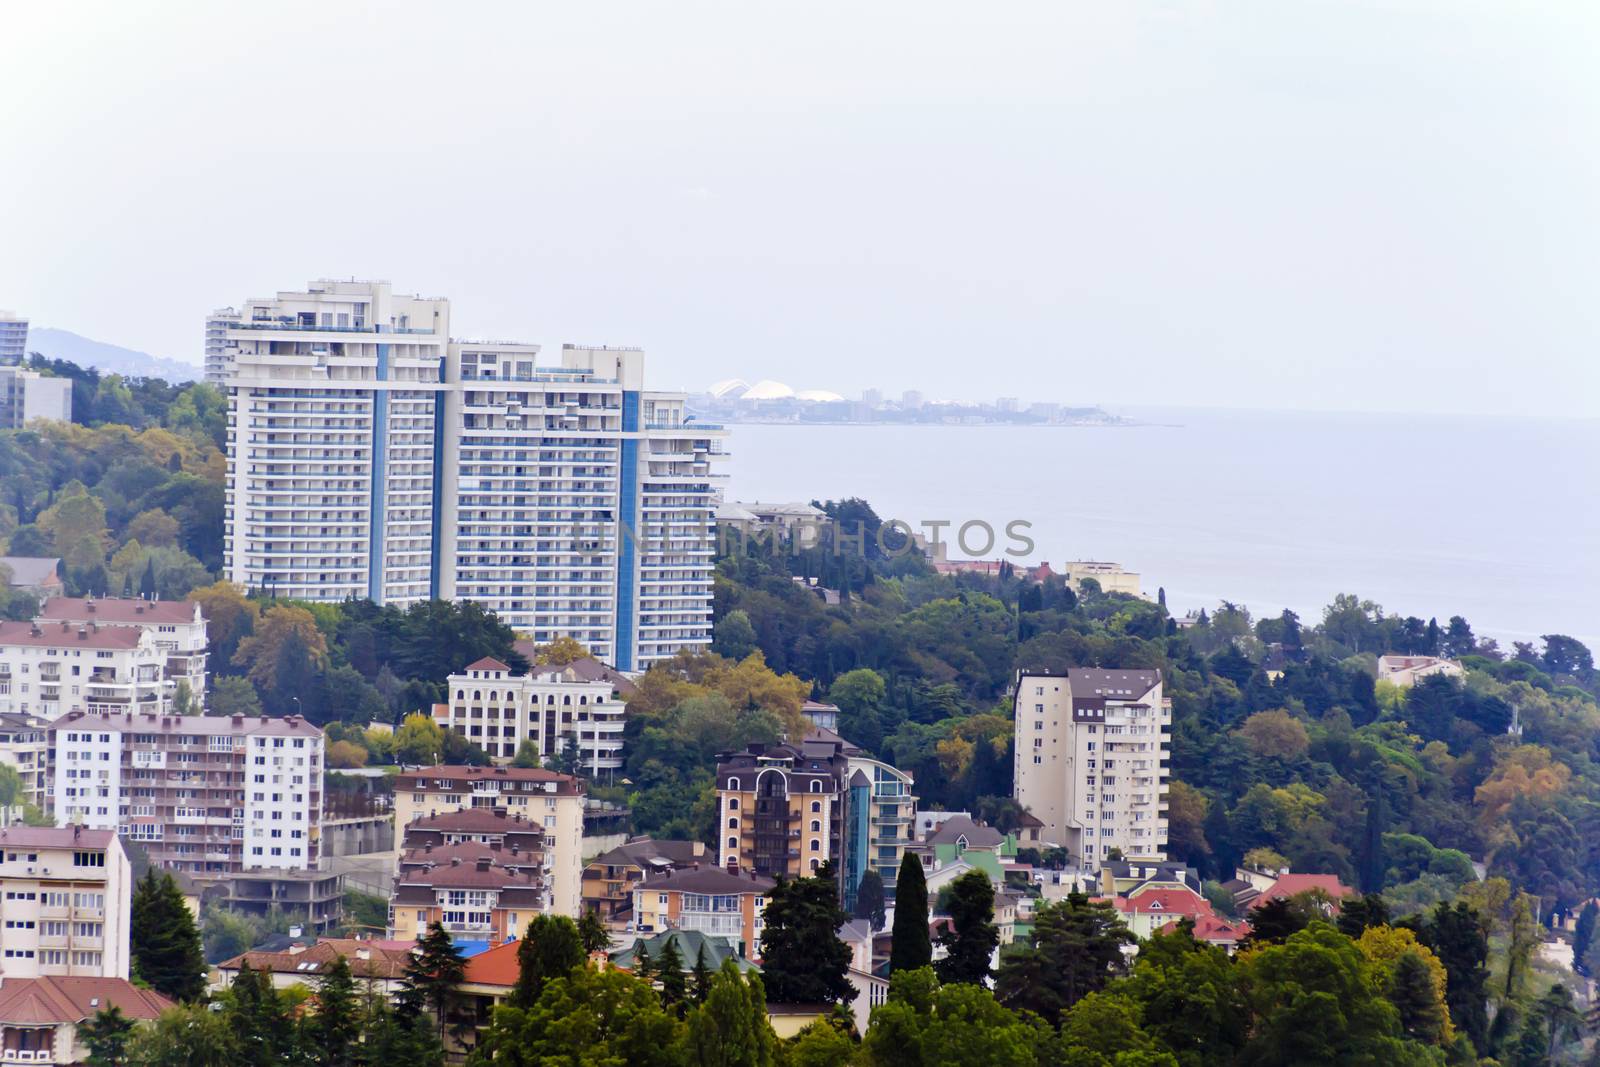 Panorama of Russian town Sochi by Julialine